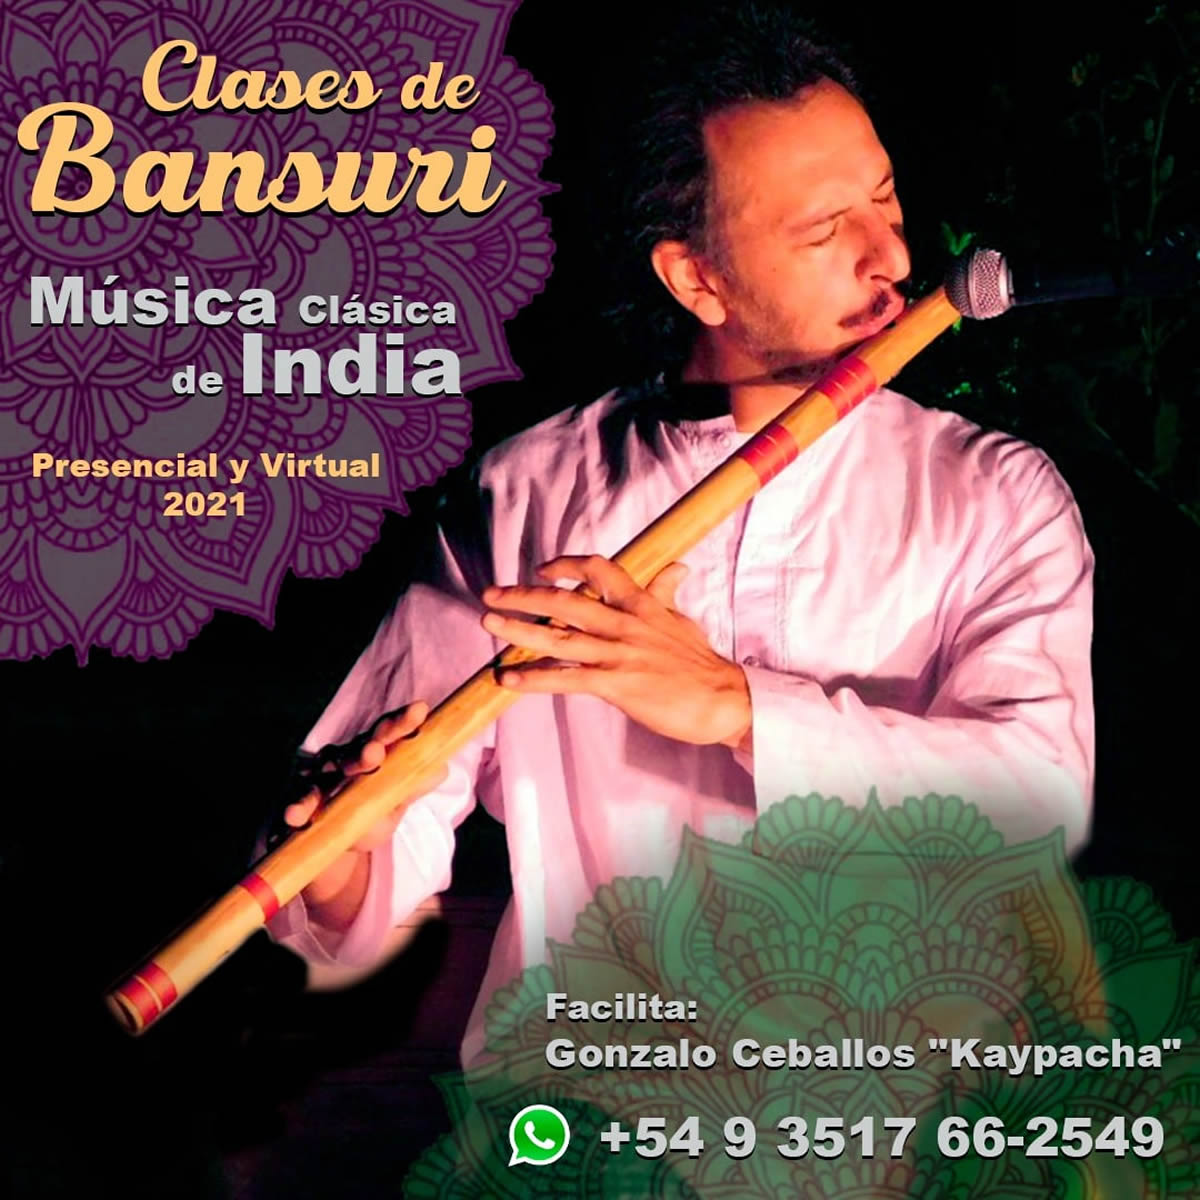 Clases frecuentes y regulares de BANSURI la flauta de bambú de India, las clases pueden ser virtuales con una regularidad semanal o presencial en Cordoba Capital y en Buenos Aires, abordando los multiples matices que engloban los Ragas del Norte de India